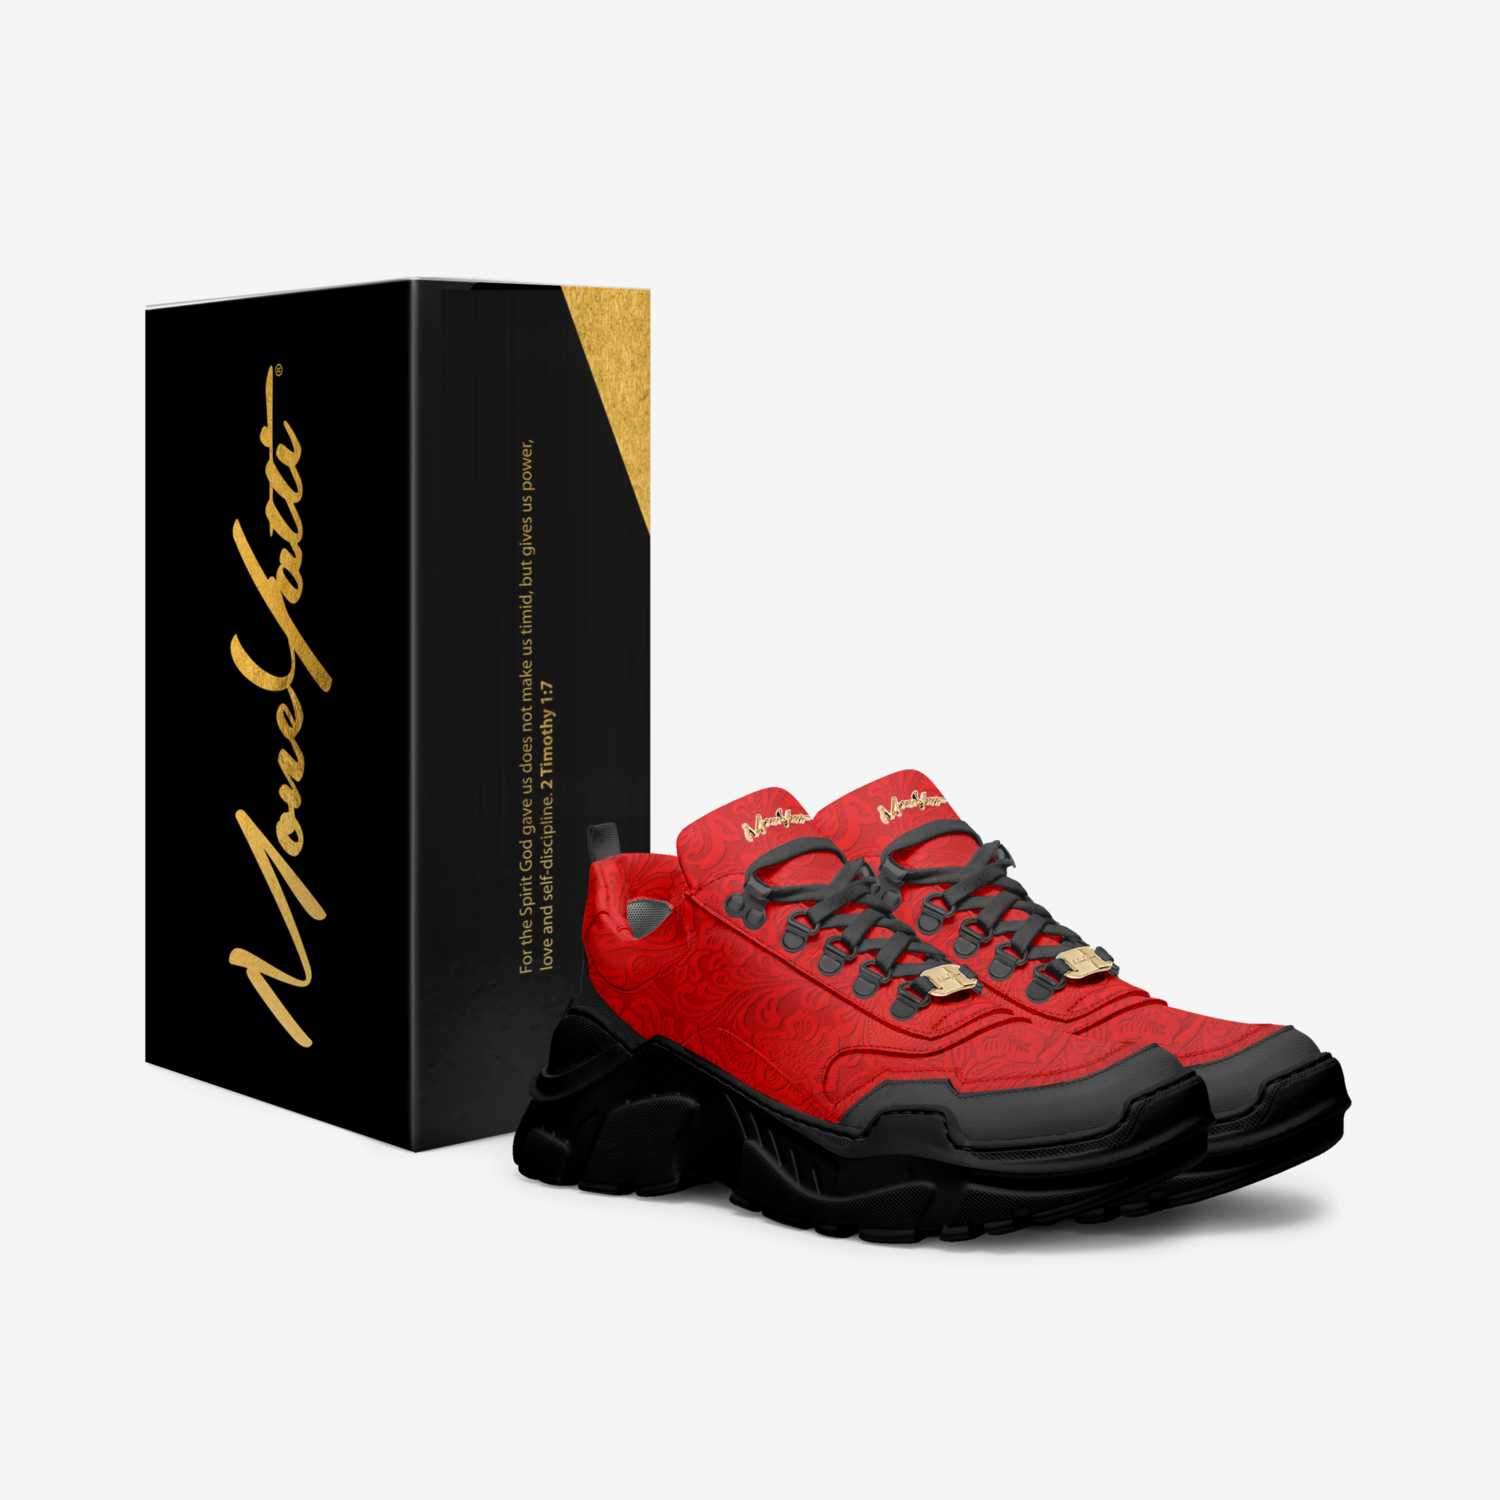 Moneyatti Murks03 custom made in Italy shoes by Moneyatti Brand | Box view